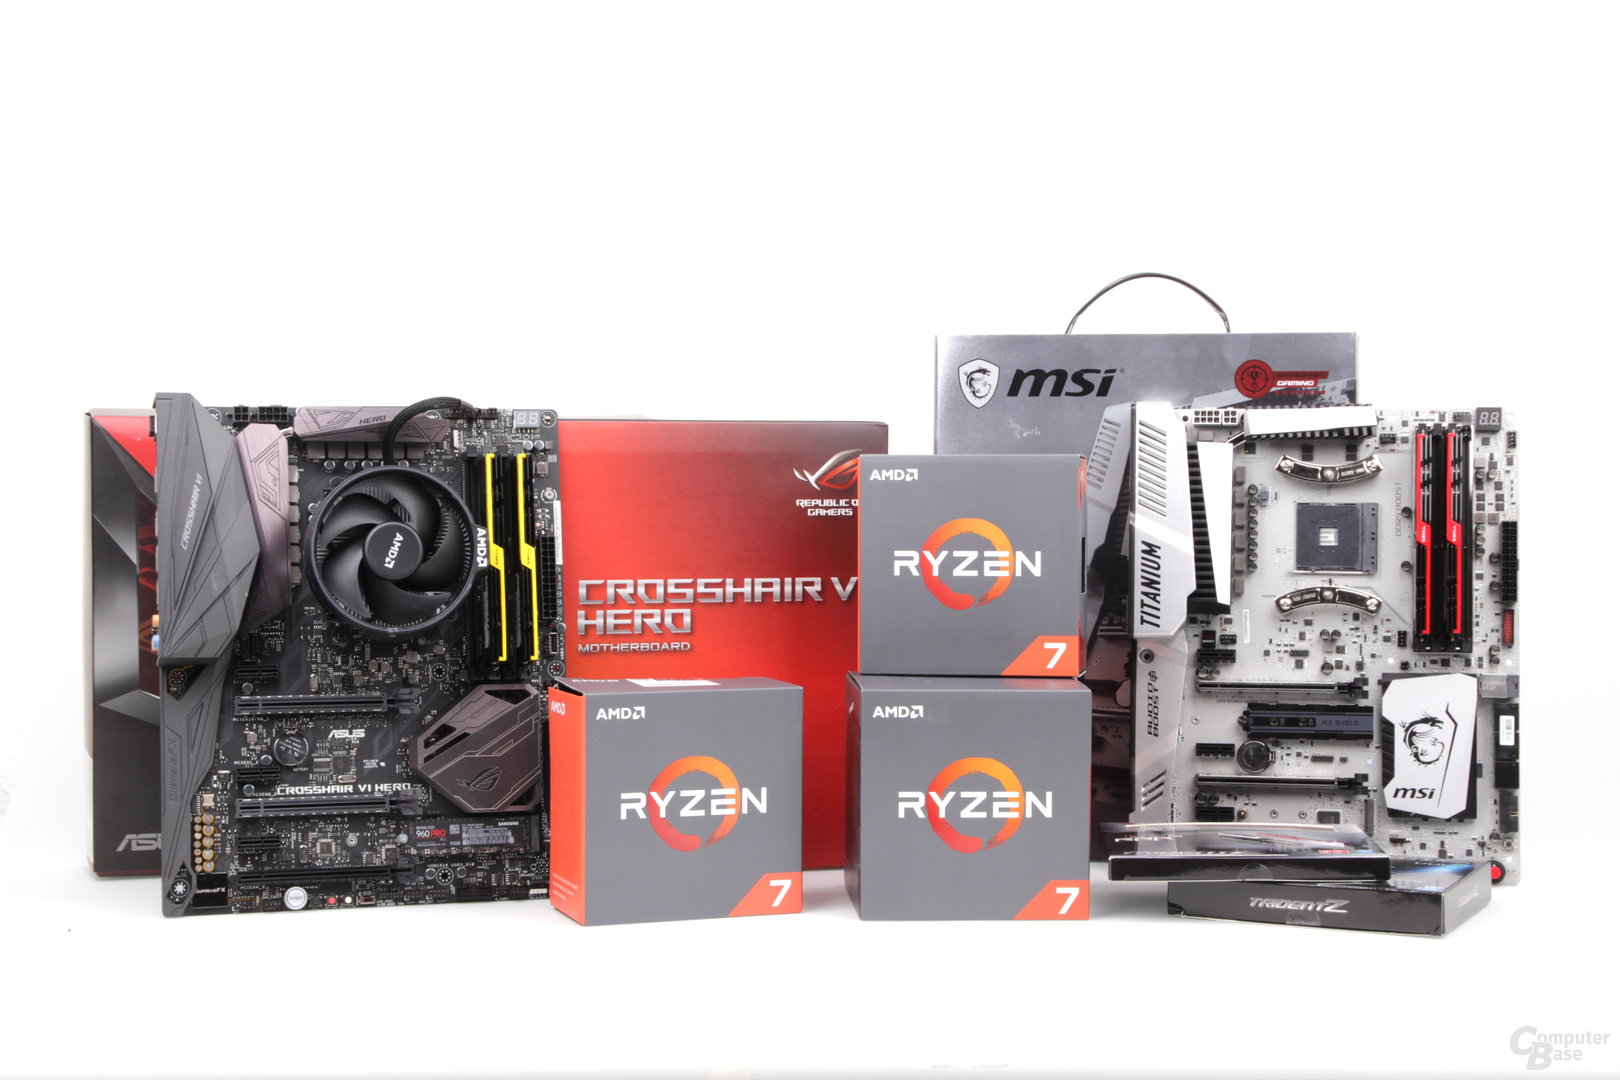 Ryzen 7 im Test: Drei CPUs, Mainboards und schneller DDR4-Speicher